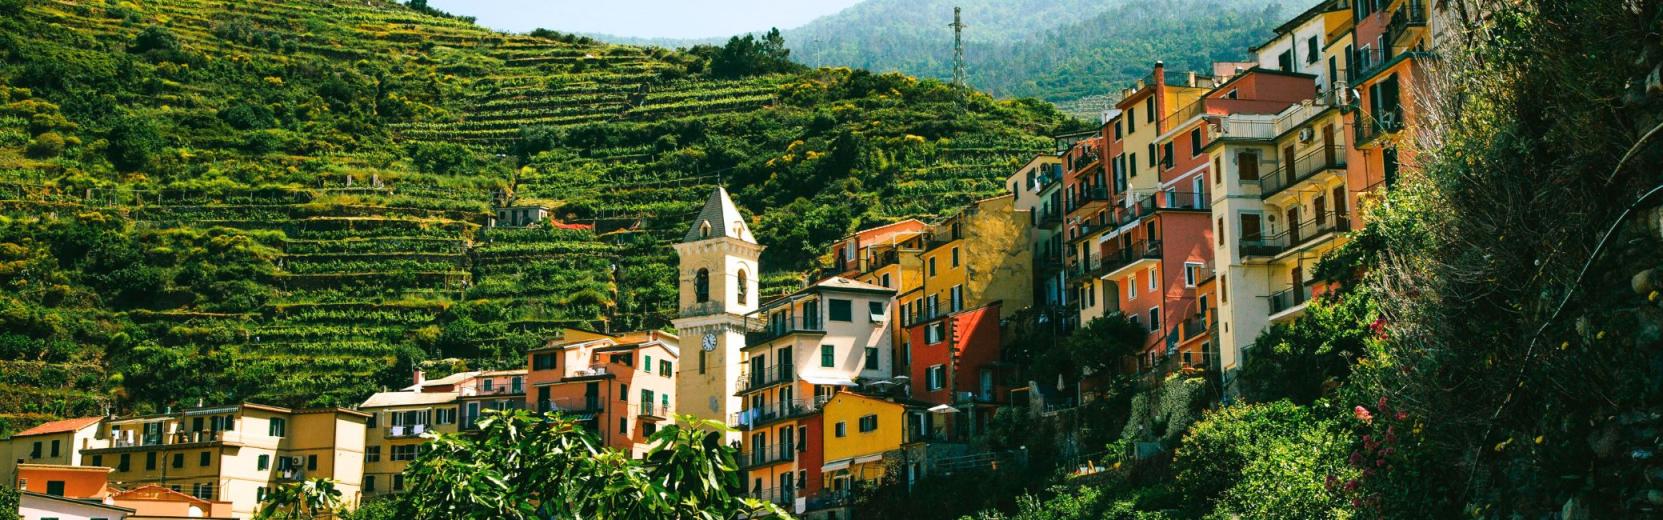 Italien Regionswahl Stadt in den Bergen